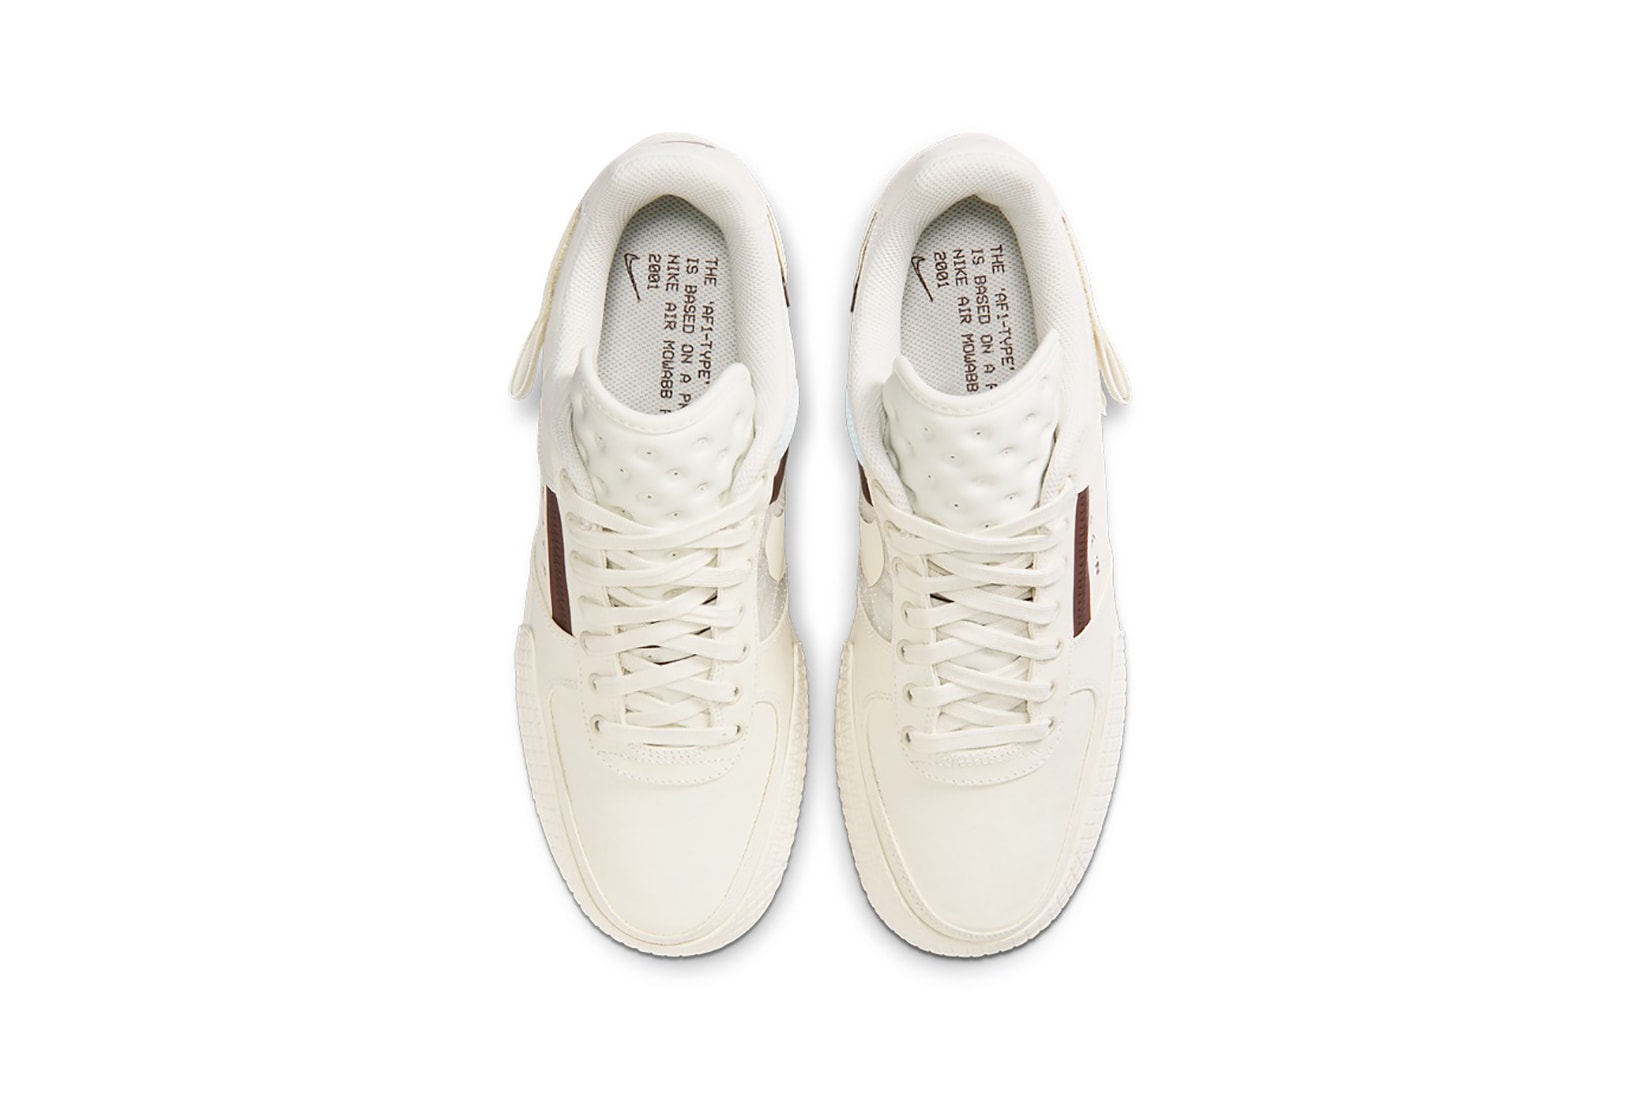 nike air force 1 type n354 sneakers cream white ivory brown shoes footwear sneakerhead